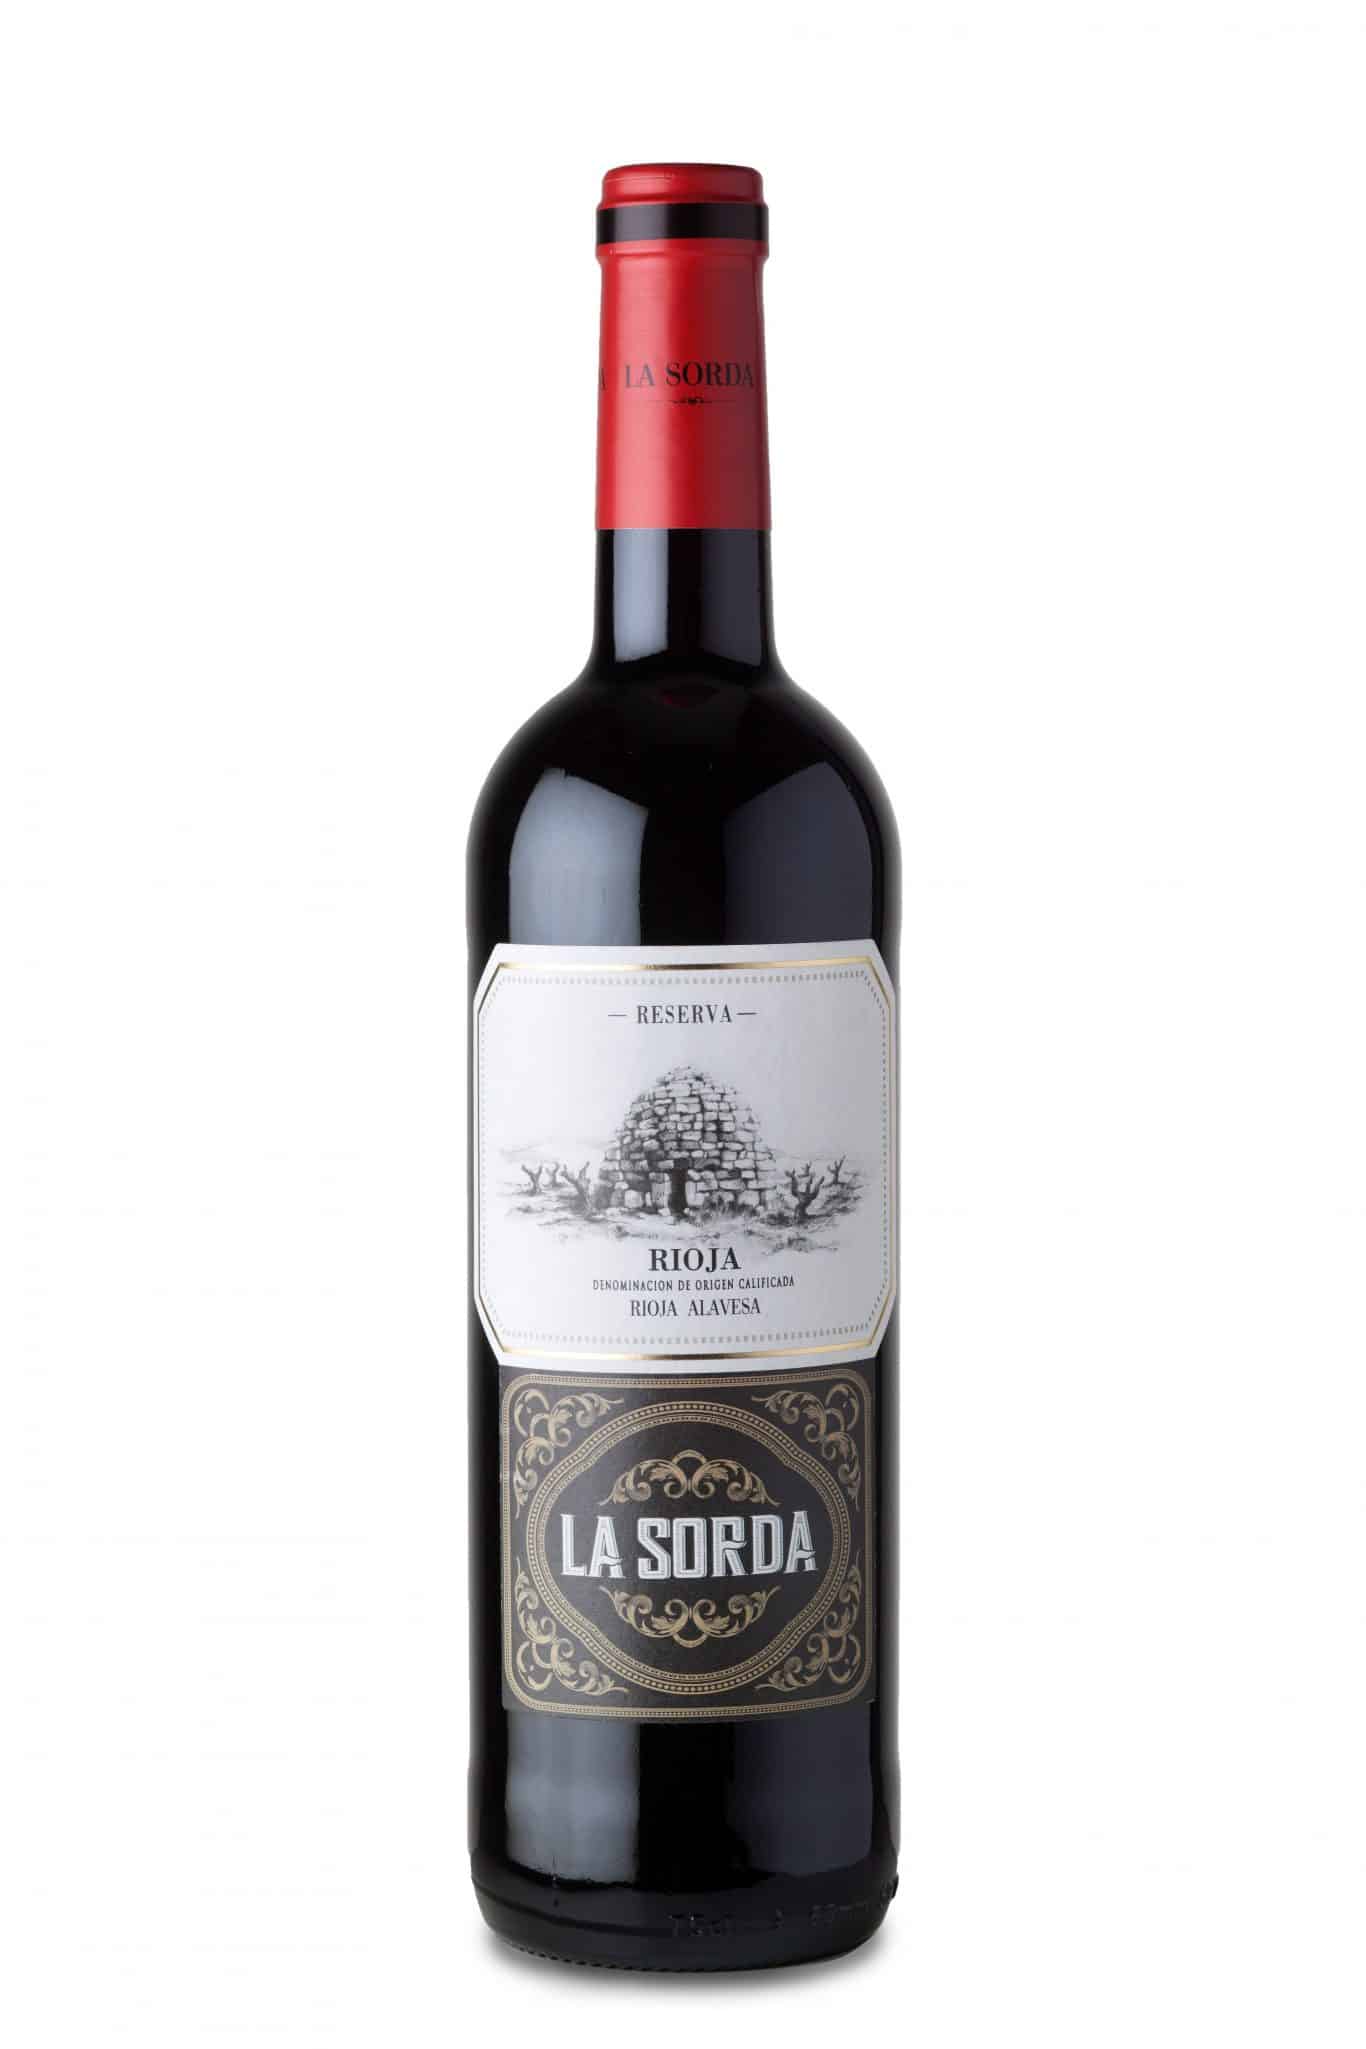 La Sorda Reserva Rioja 2015